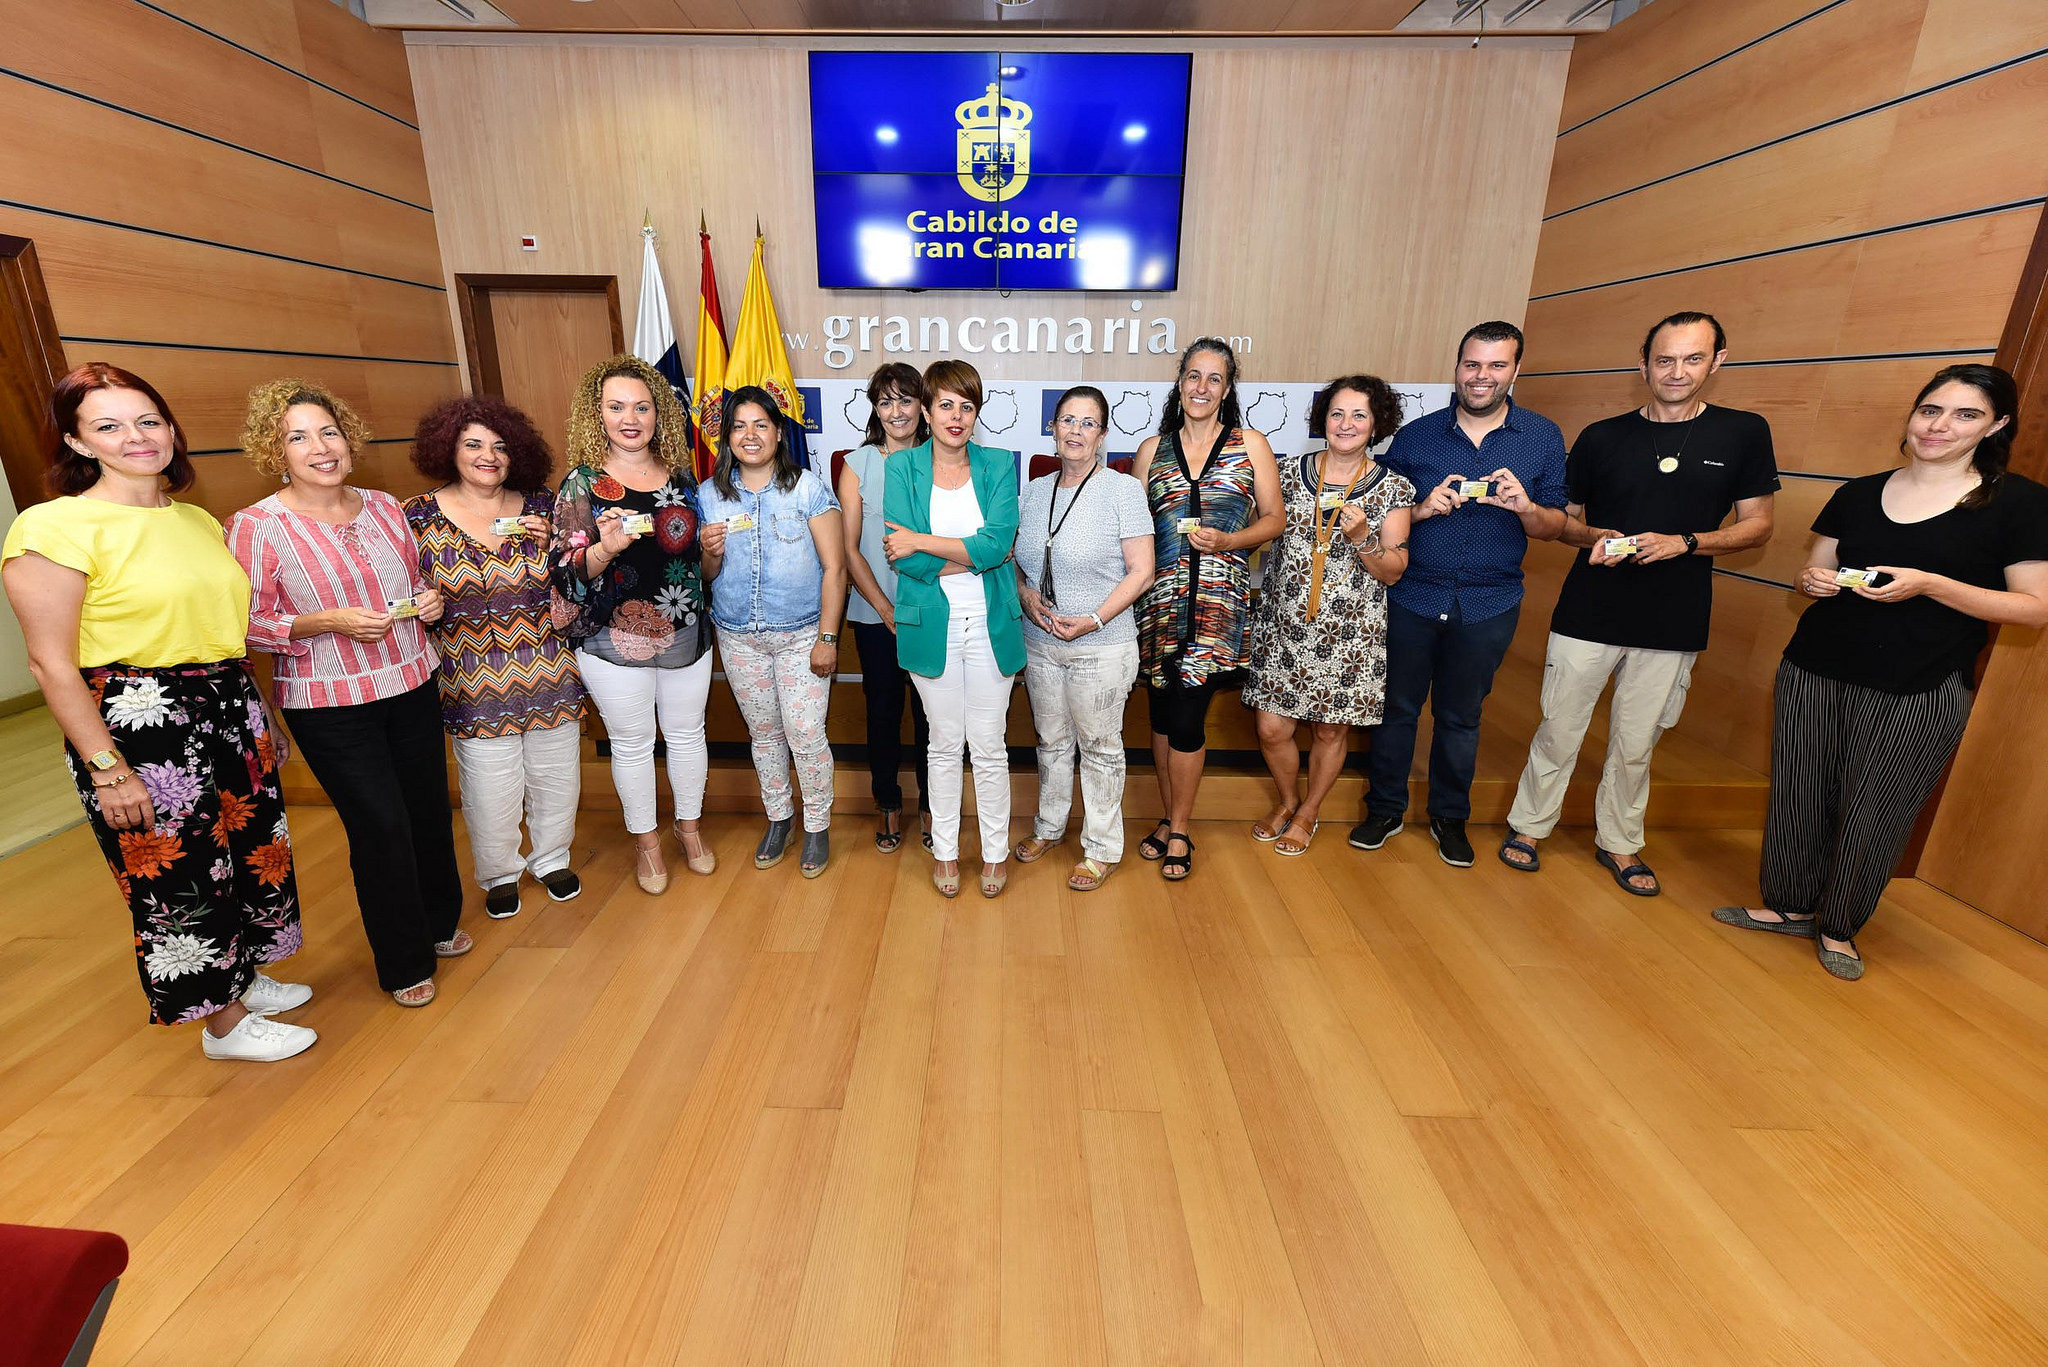 El Cabildo acredita sus oficios a 15 artesanos de Gran Canaria, que ya cuenta con 545 con carné oficial